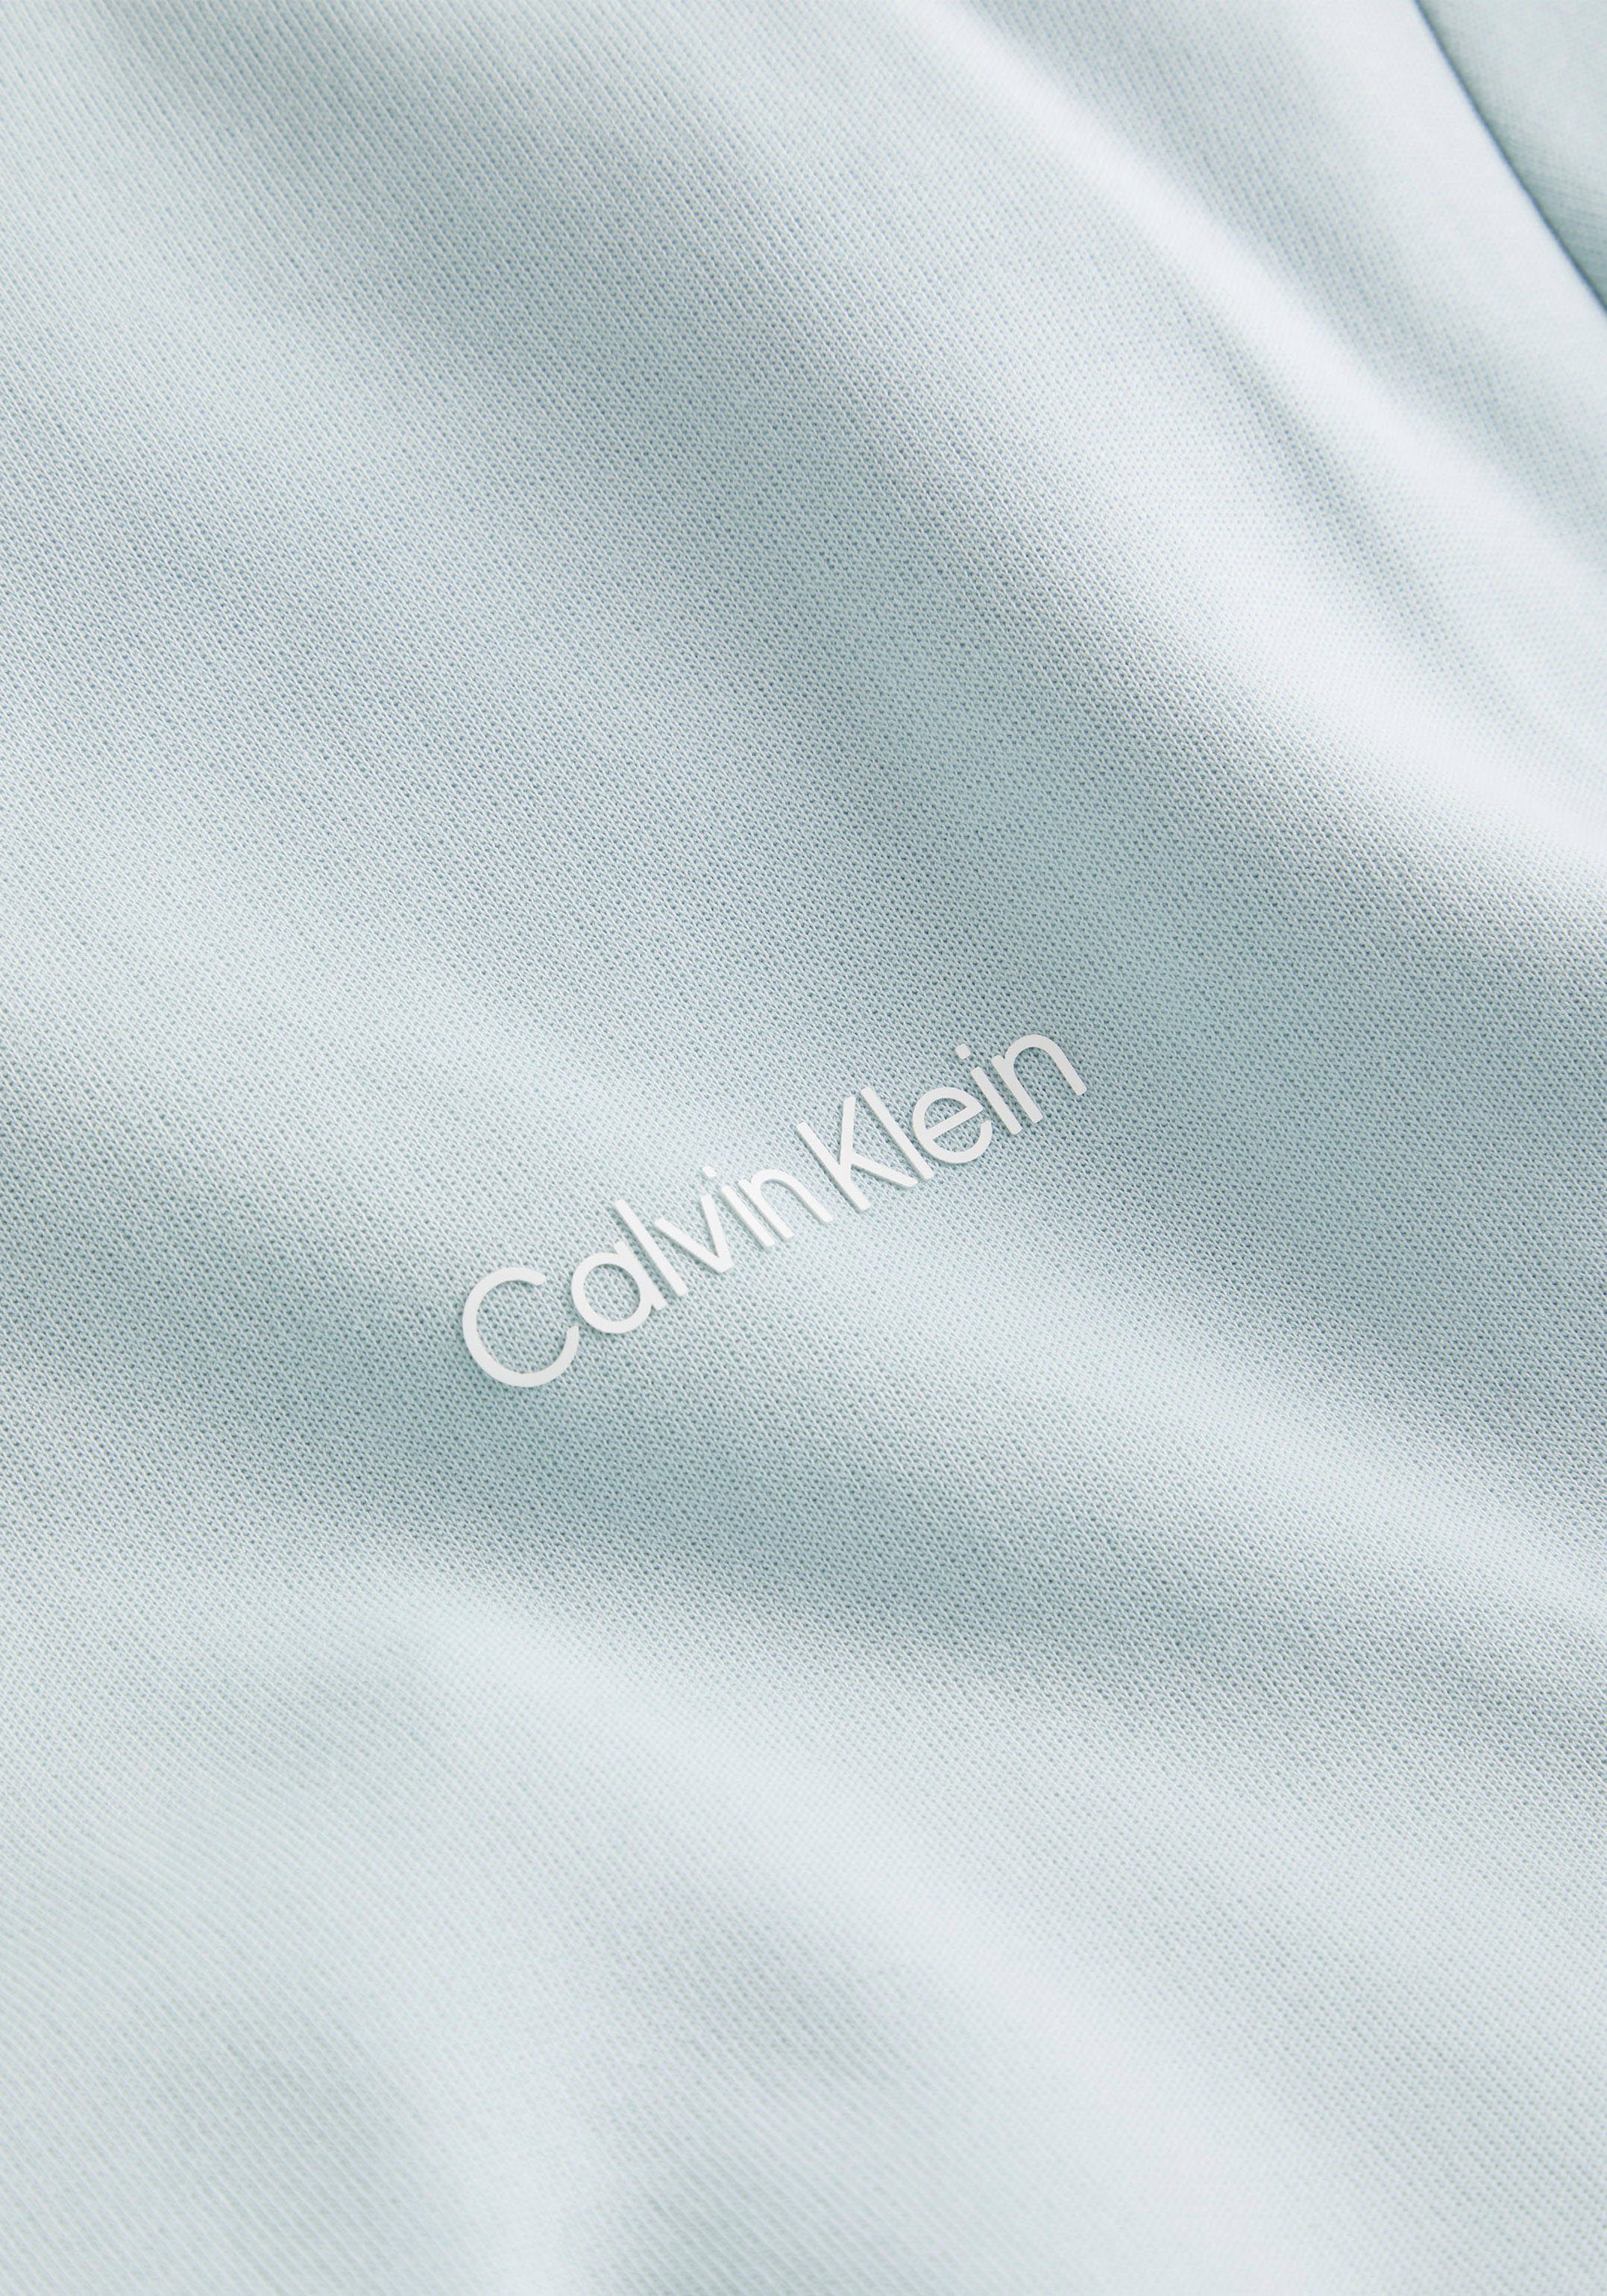 SWEATSHIRT mit Rundhalsausschnitt REPREVE Sweatshirt halsnahmen ghost Calvin Klein MICRO LOGO green